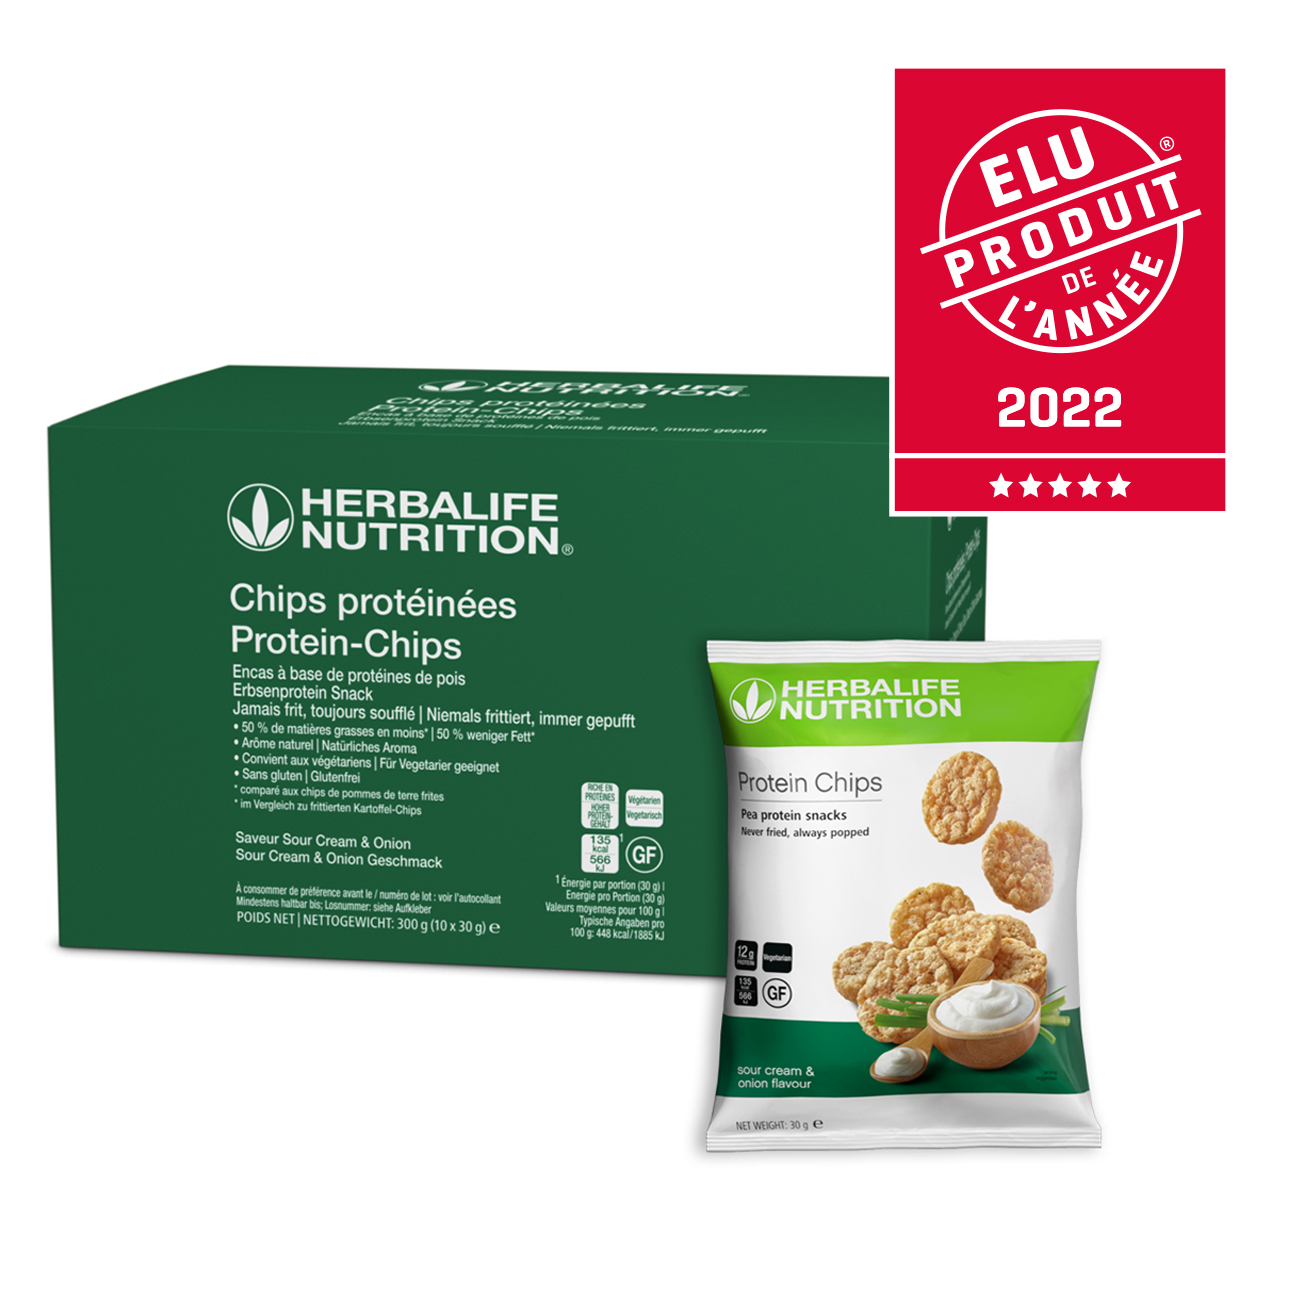 Les Chips Protéinées saveur Sour Cream Onion Herbalife Nutrition Elu Produit de l’Année 2022.